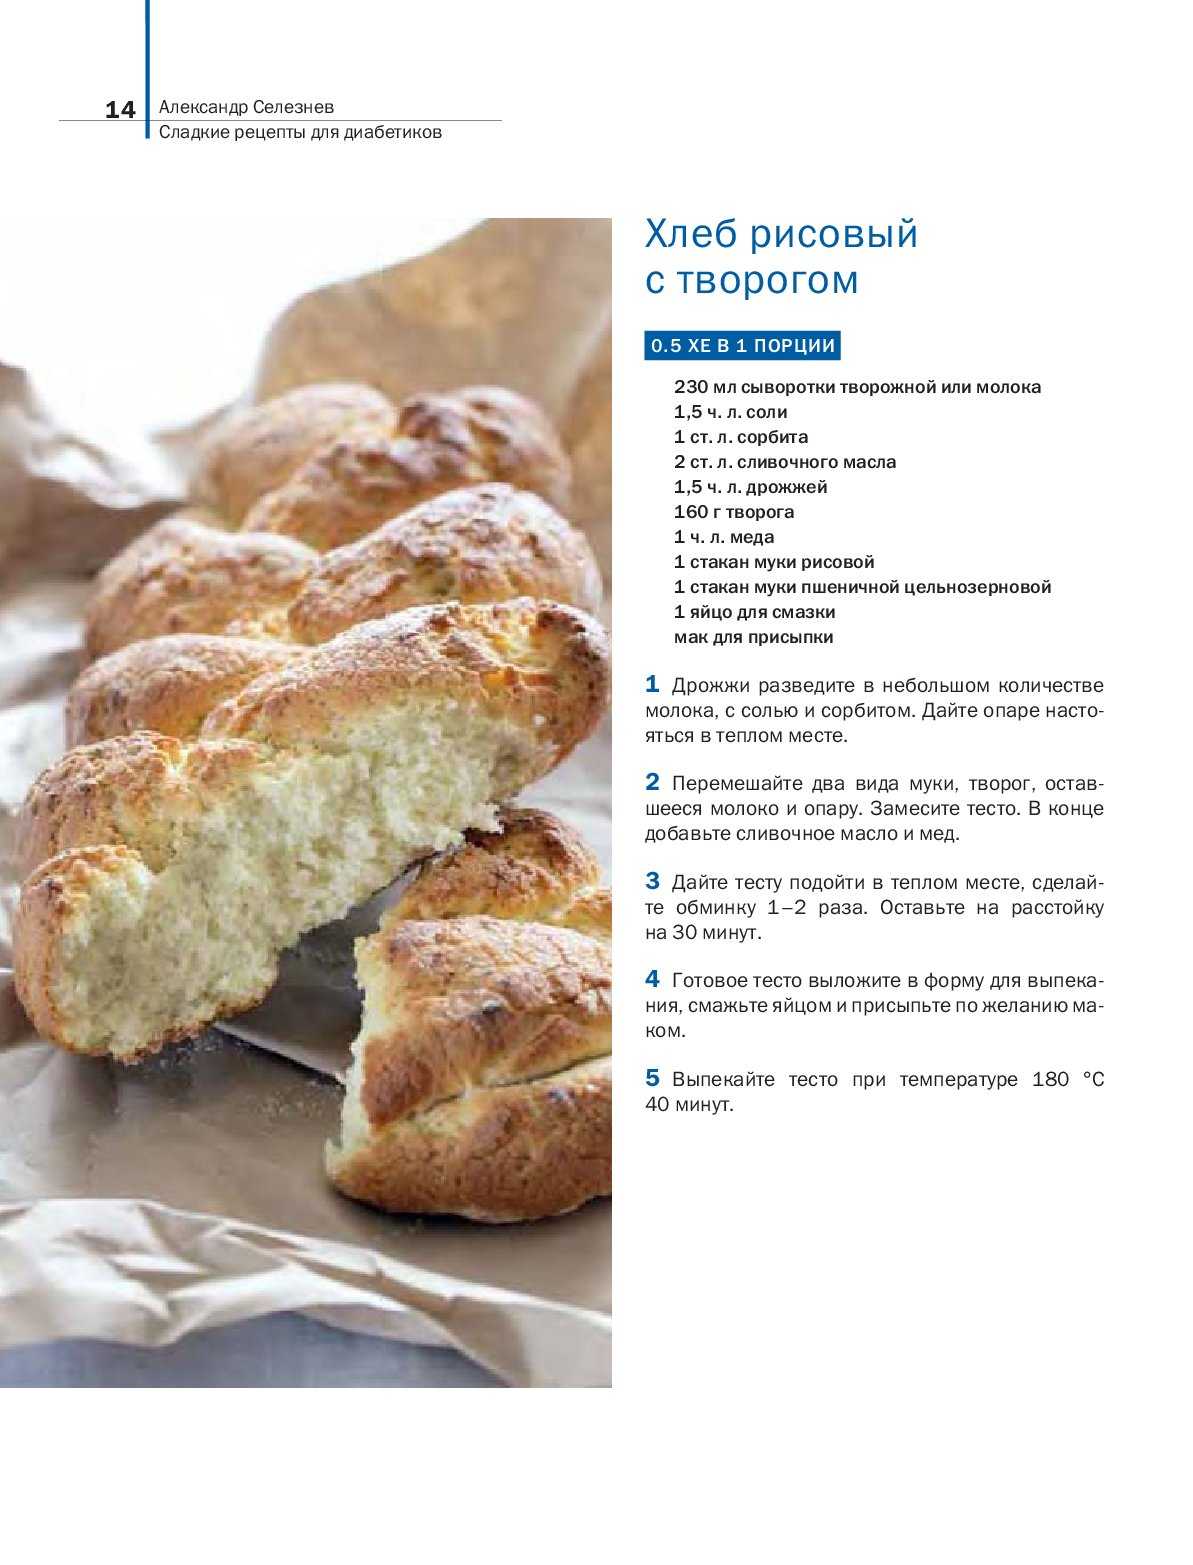 Десерт без сахара и муки для диабетиков - bookcooks.ru